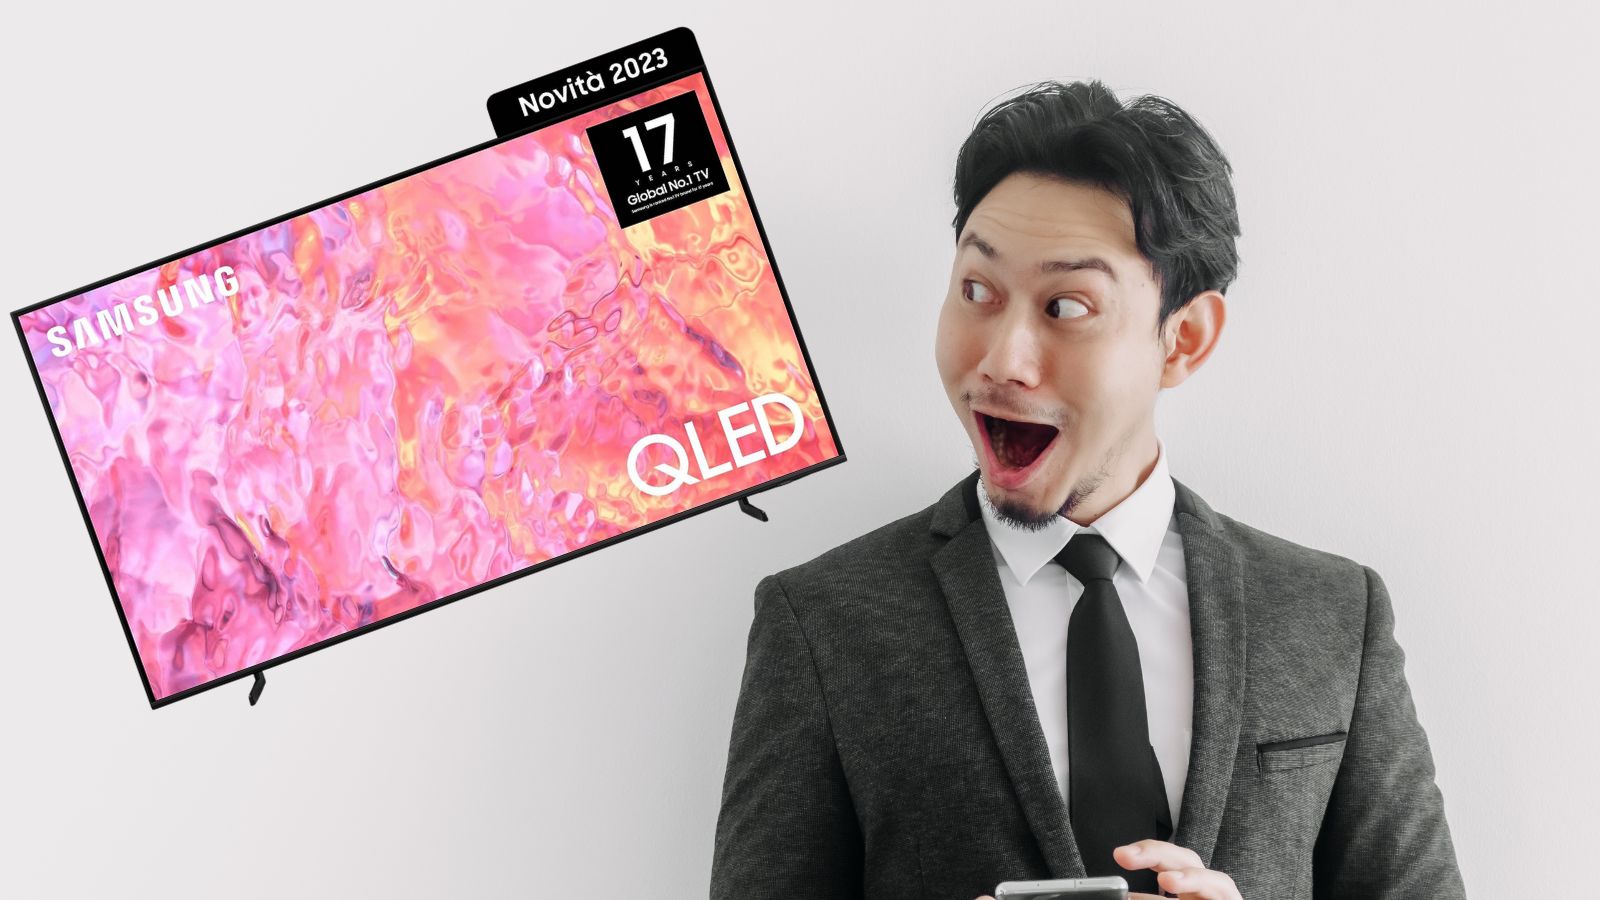 Samsung Smart TV QLED 4K in offerta di 500 euro su Amazon